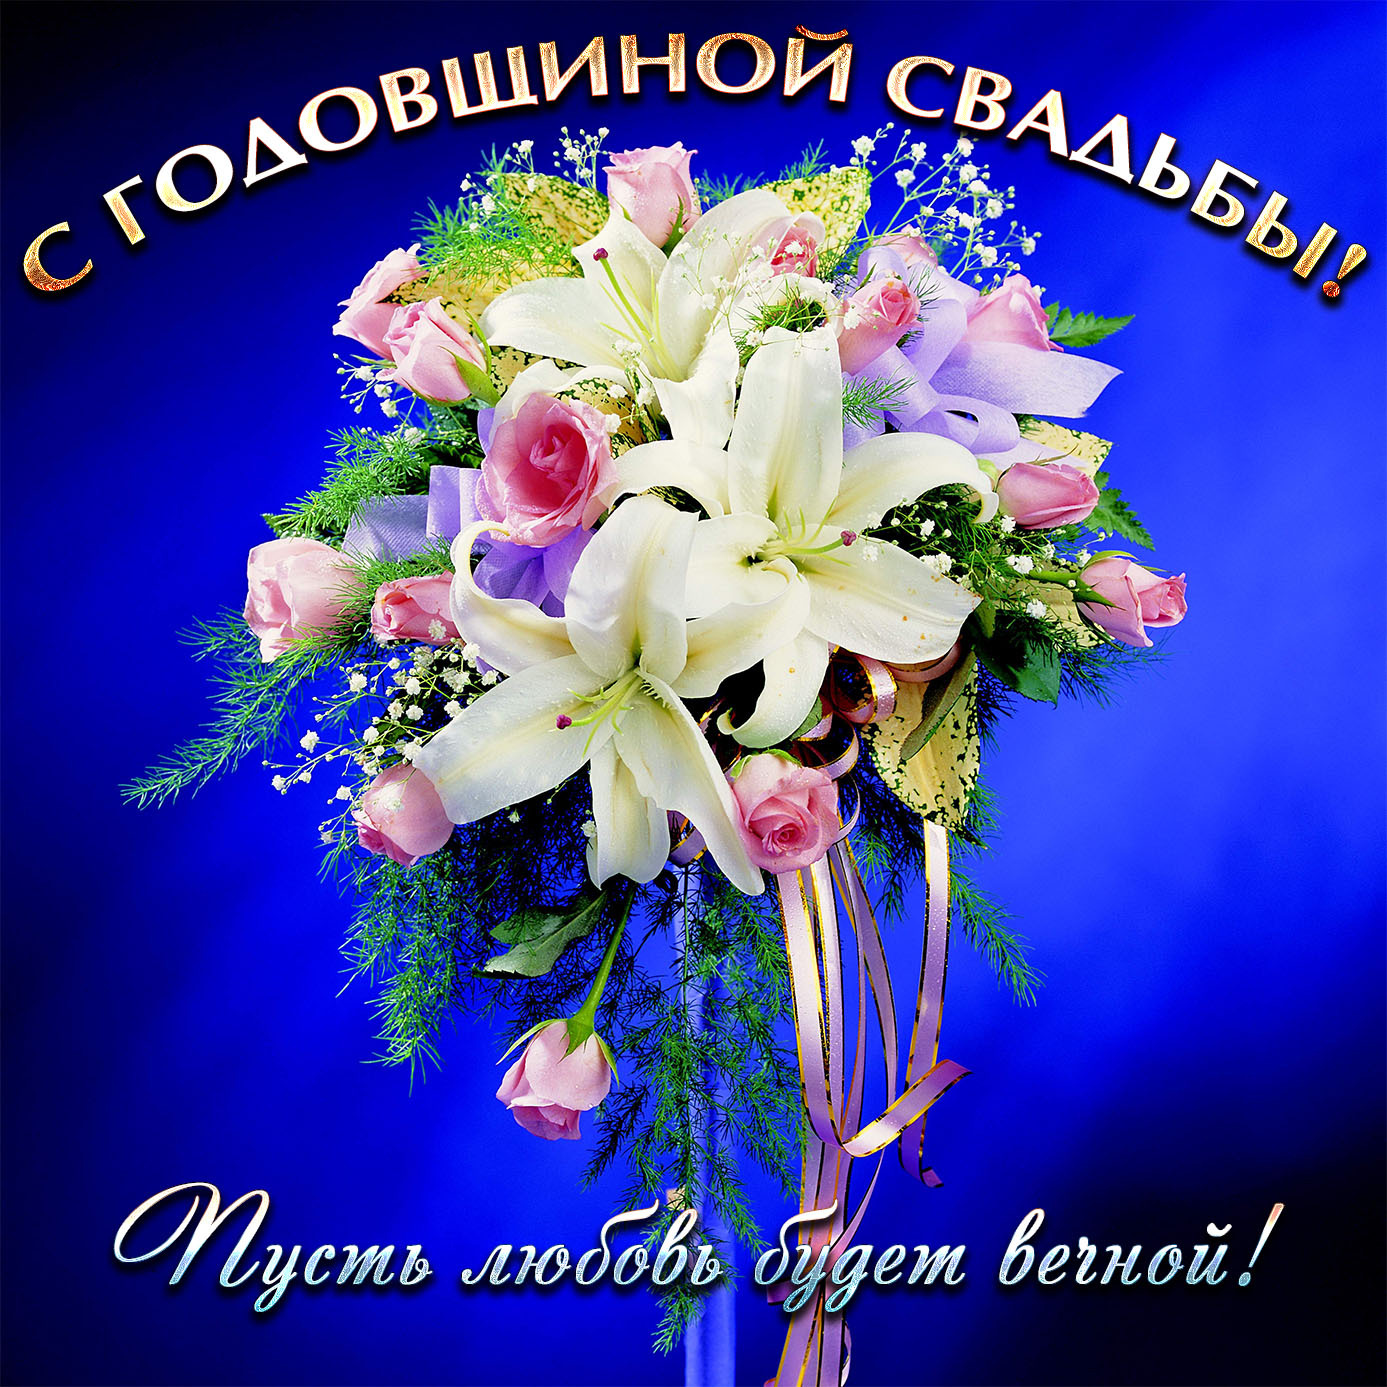 С годовщиной свадьбы, пусть любовь будет вечной! Офигенный букет цветов на синем фоне для поздравления мужа с годовщиной свадьбы.